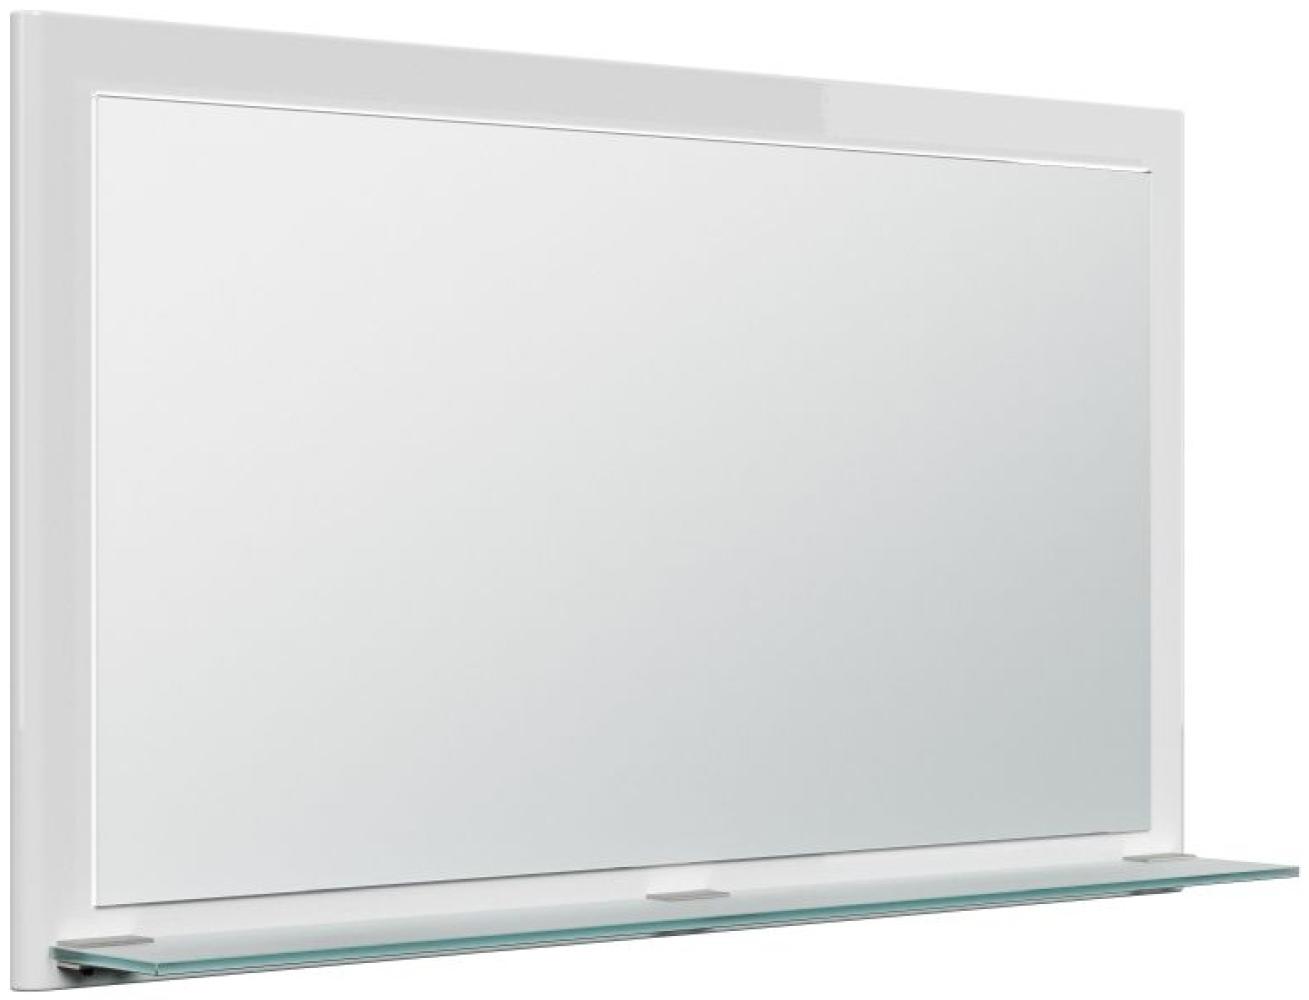 Posseik Spiegel Elite mit Glasablage 104 x 60 cm Weiß Bild 1